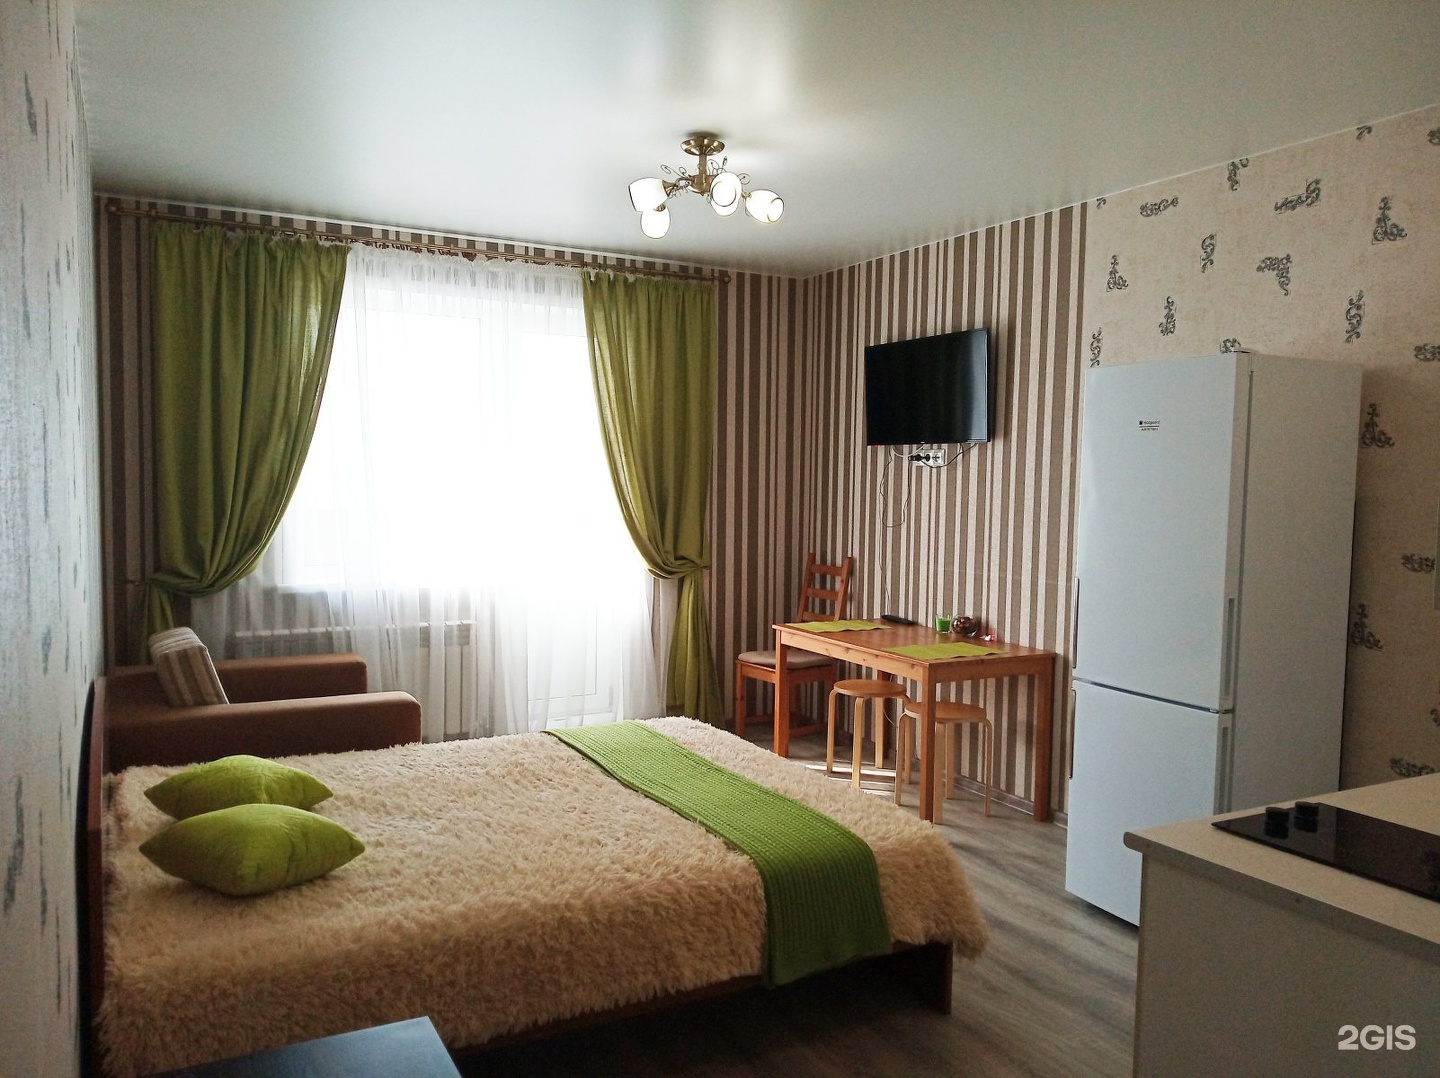 Аренда комнаты посуточно. Квартиры в Новосибирске. Посуточная квартира. Суточная квартира. Квартиры в центре Новосибирска.